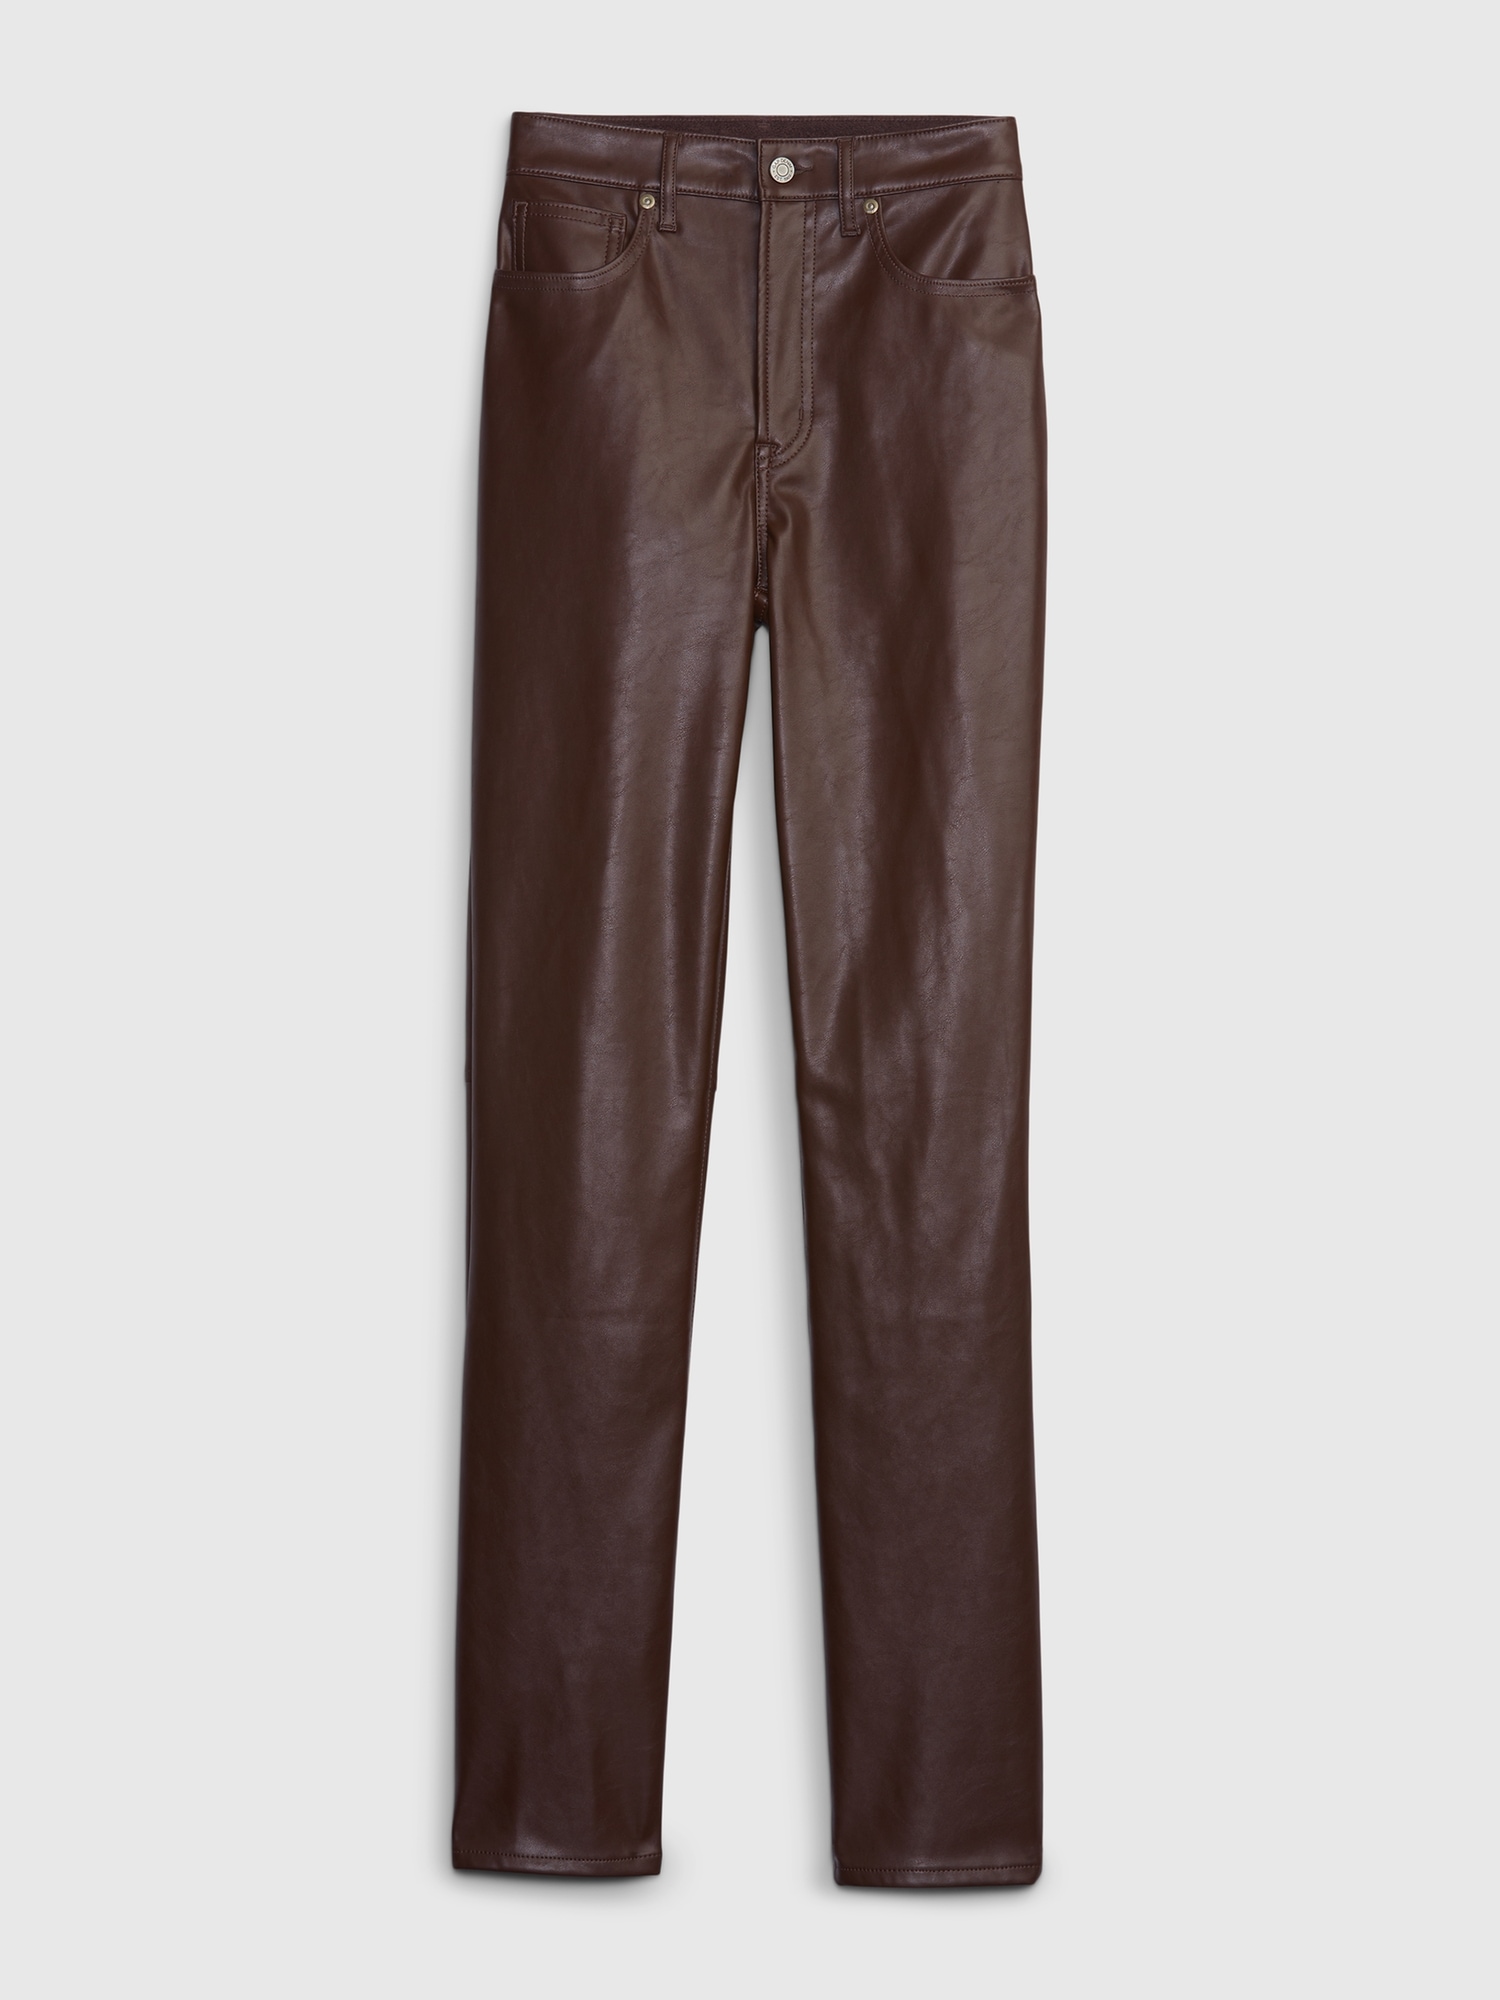 GAP, Pants & Jumpsuits, Vintage Gap Leather Pants